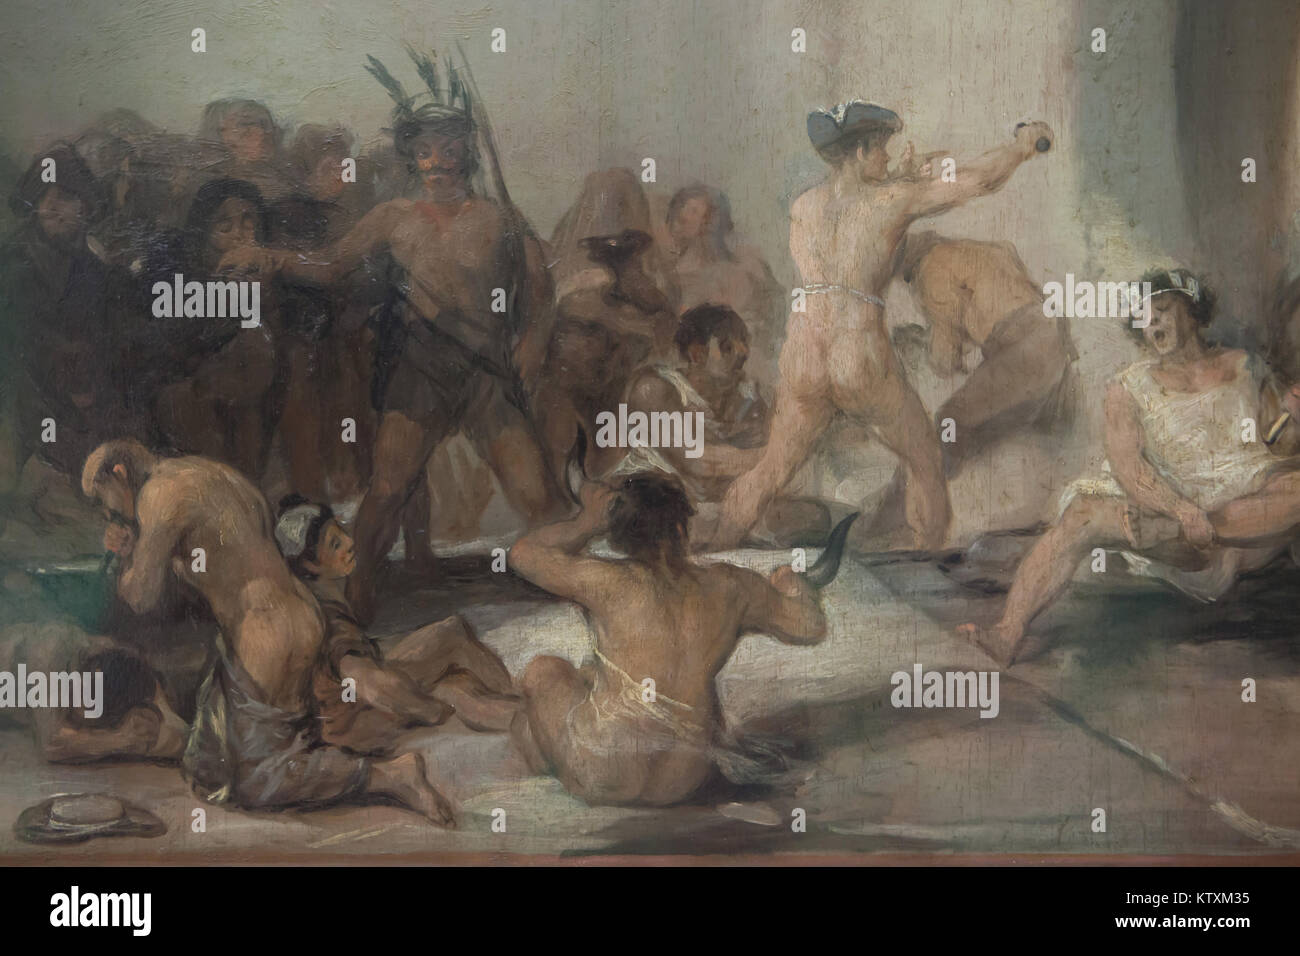 Le persone affette da disturbi mentali illustrato nel dettaglio del dipinto "Madhouse" dal pittore spagnolo Francisco Goya (ca. 1812-1819) sul display in Real Academia de Bellas Artes de San Fernando (Reale Accademia di Belle Arti di San Fernando) a Madrid, Spagna. Foto Stock